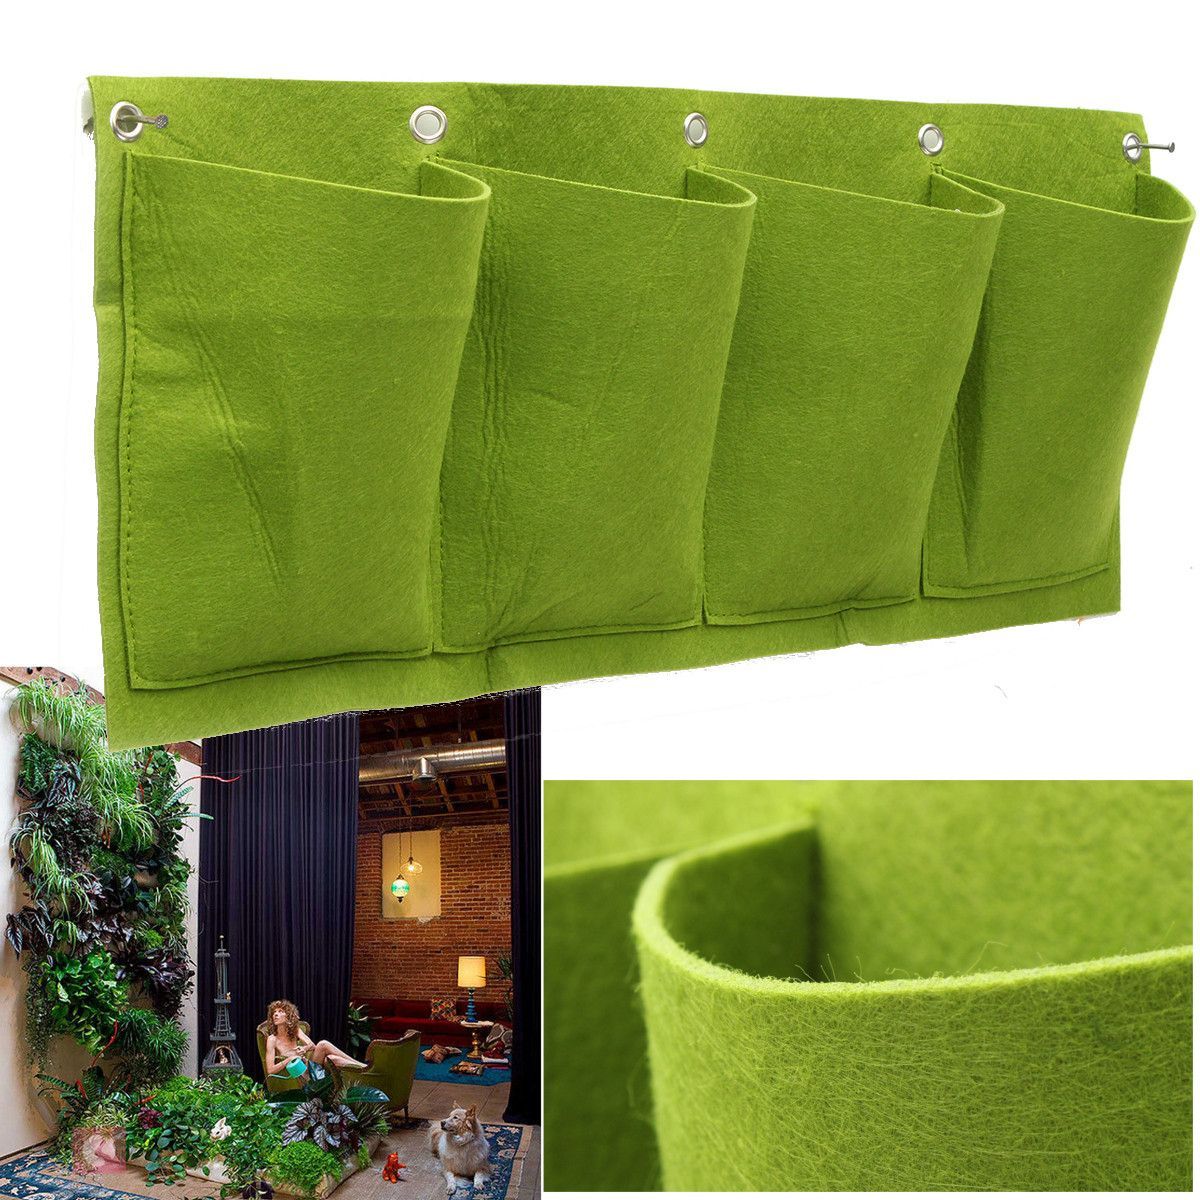 4-Pockets-Outdoor-Indoor-Wall-Mount-Window-Garden-Vertical-Green-Hanging-Aeration-Planter-Grow-Bag-1193374